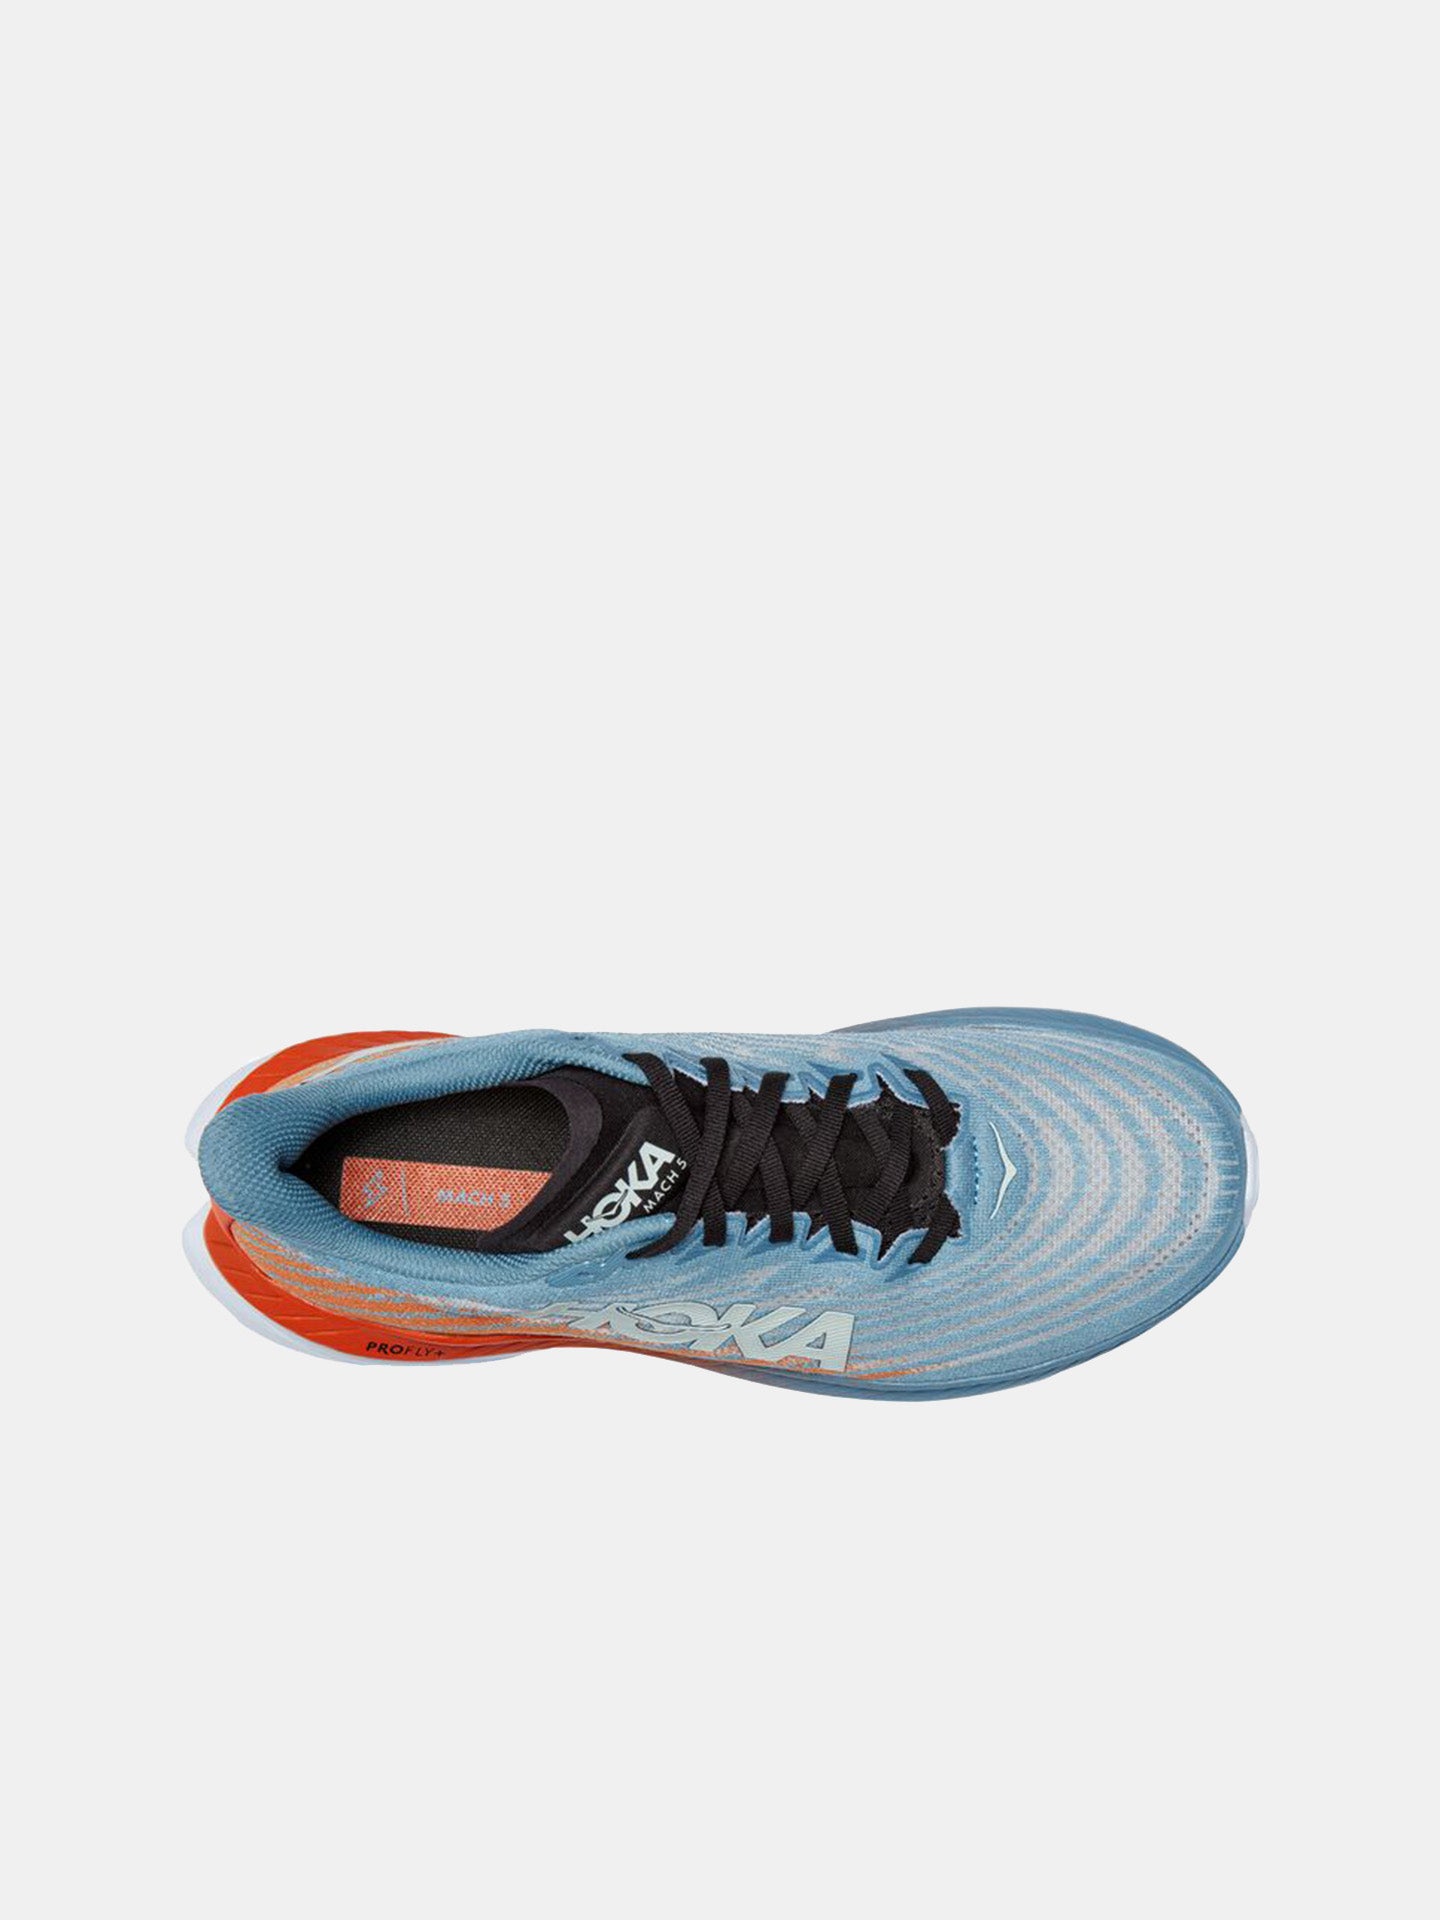 Hoka Men's Mach 5 Everyday Training Shoes #color_Blue